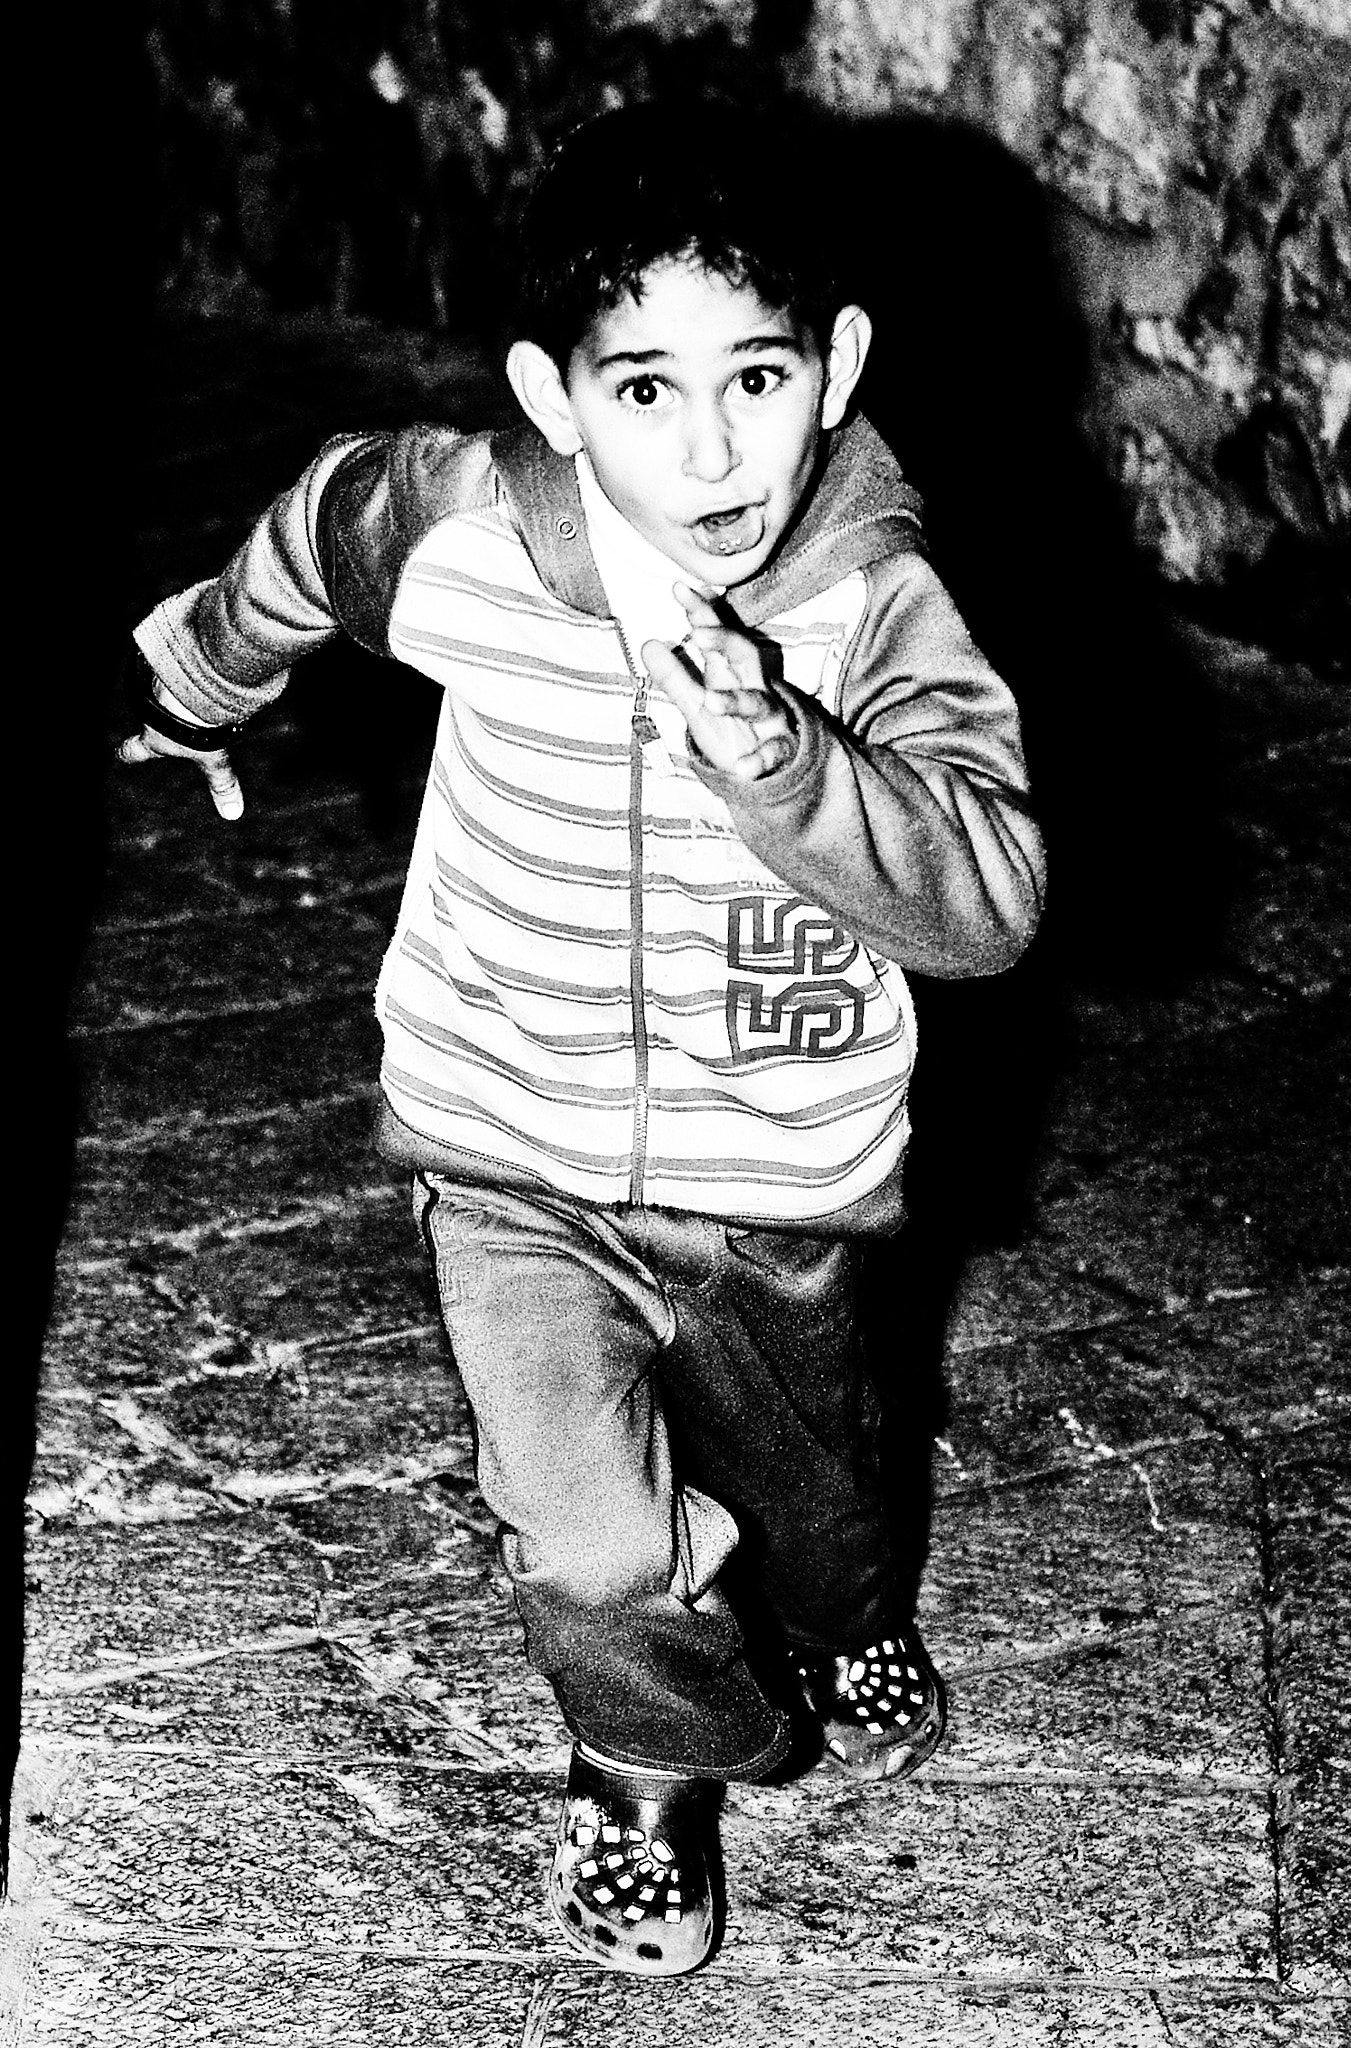 Pentax K200D sample photo. Jerusalem boy photography